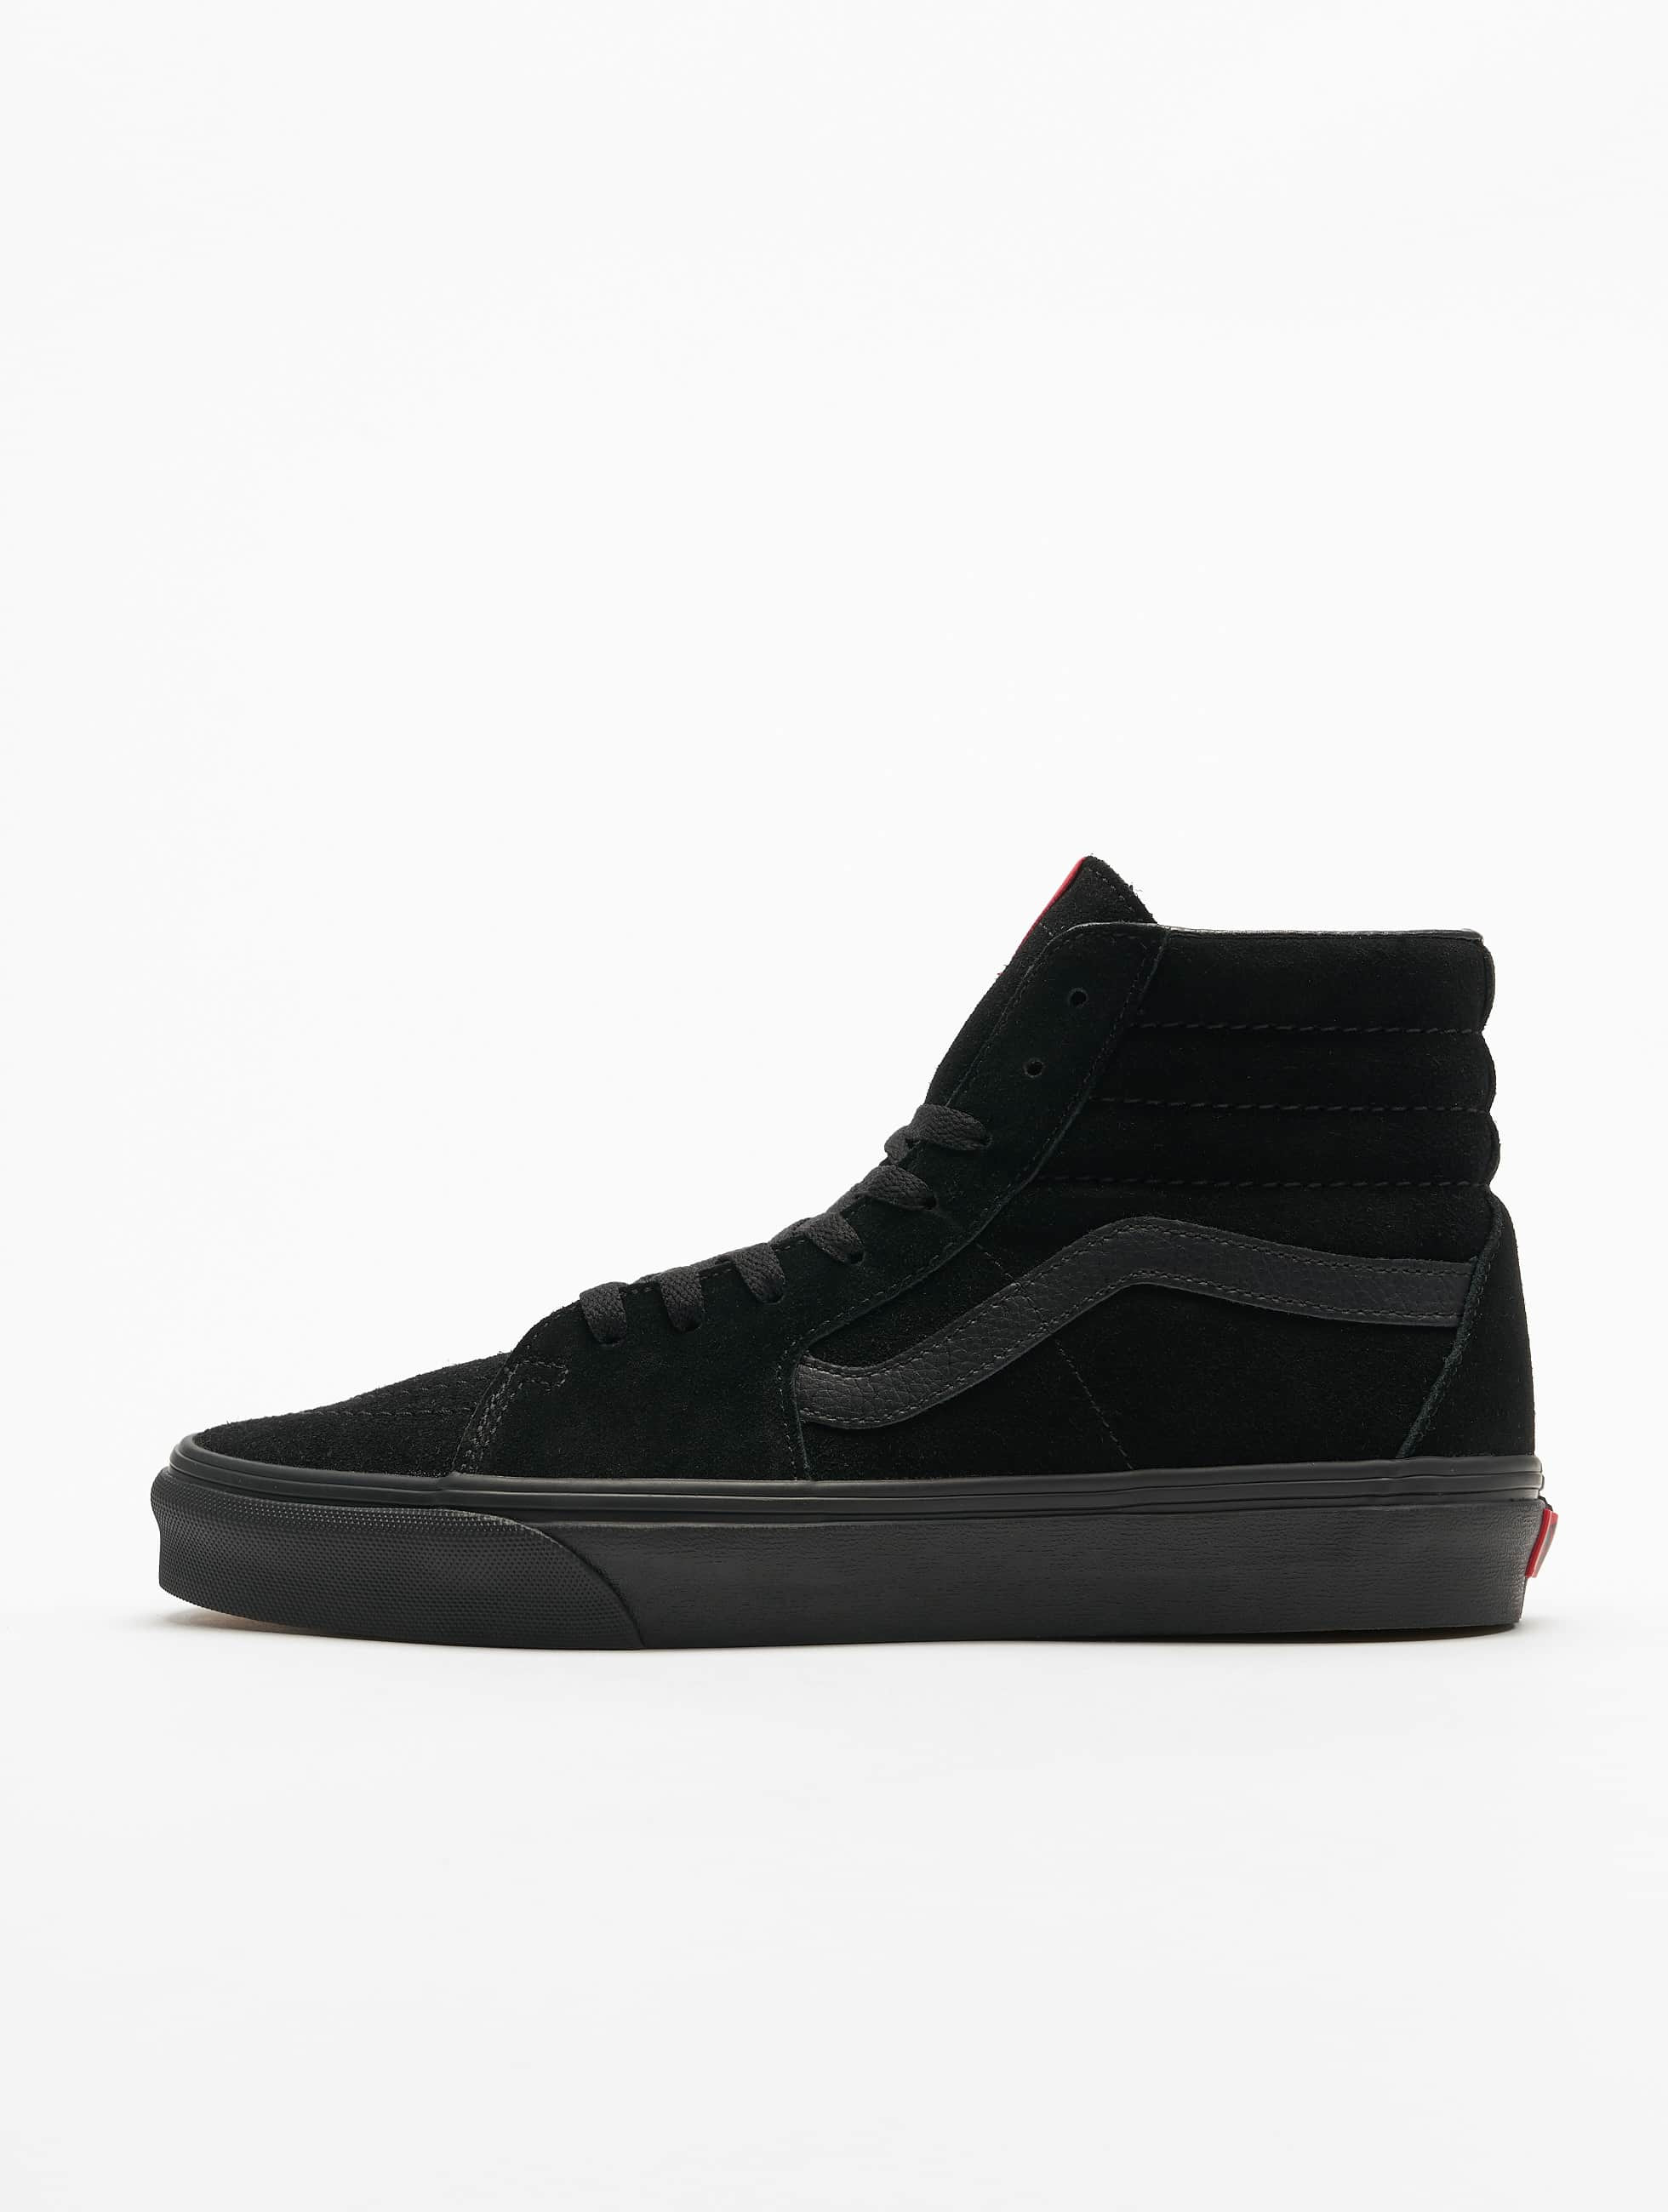 Vans Sk8-Hi Sneakers Black/Black